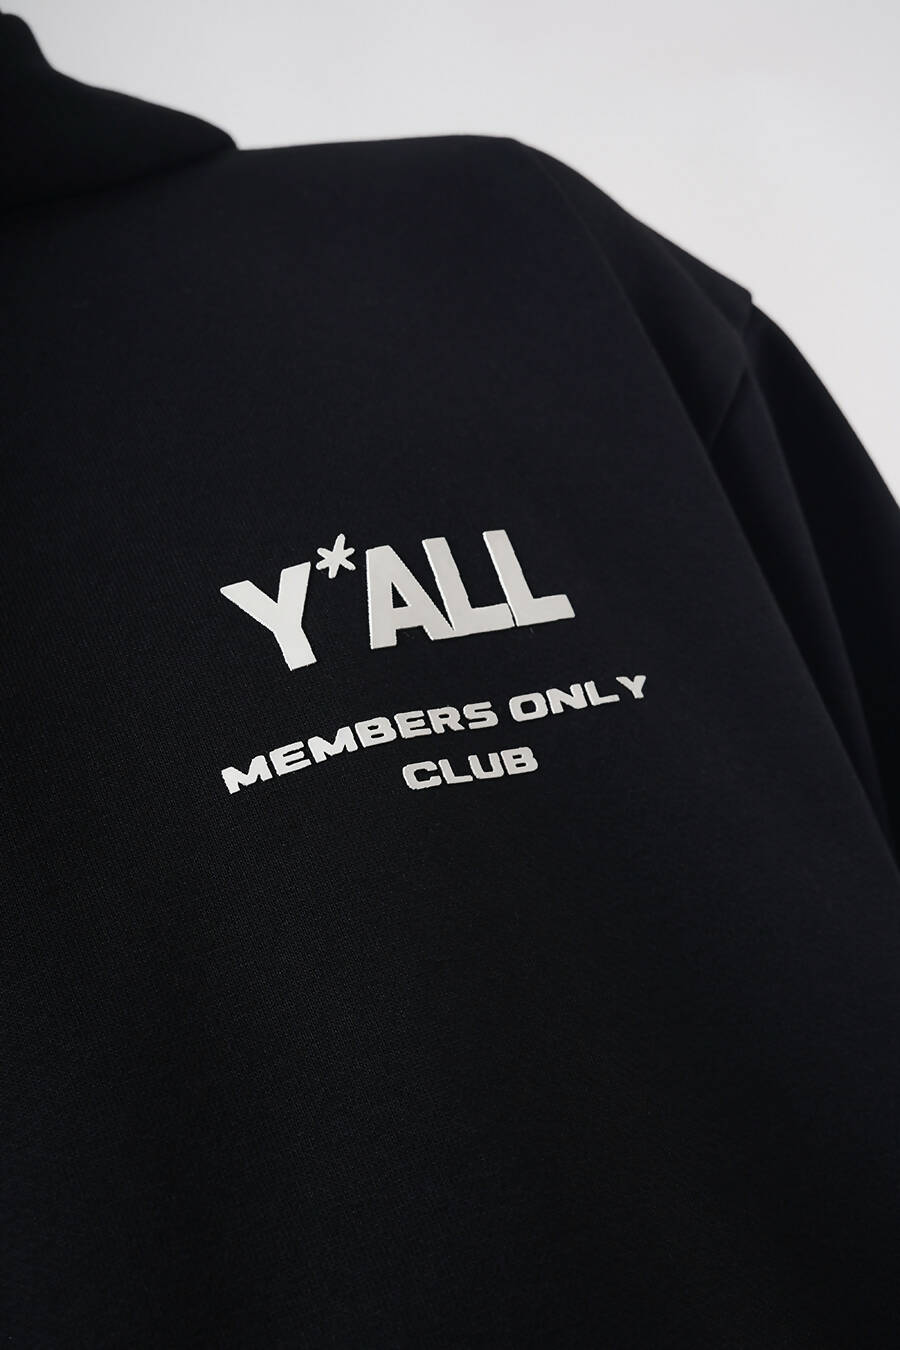 MEMBERS ONLY CLUB - BLACK